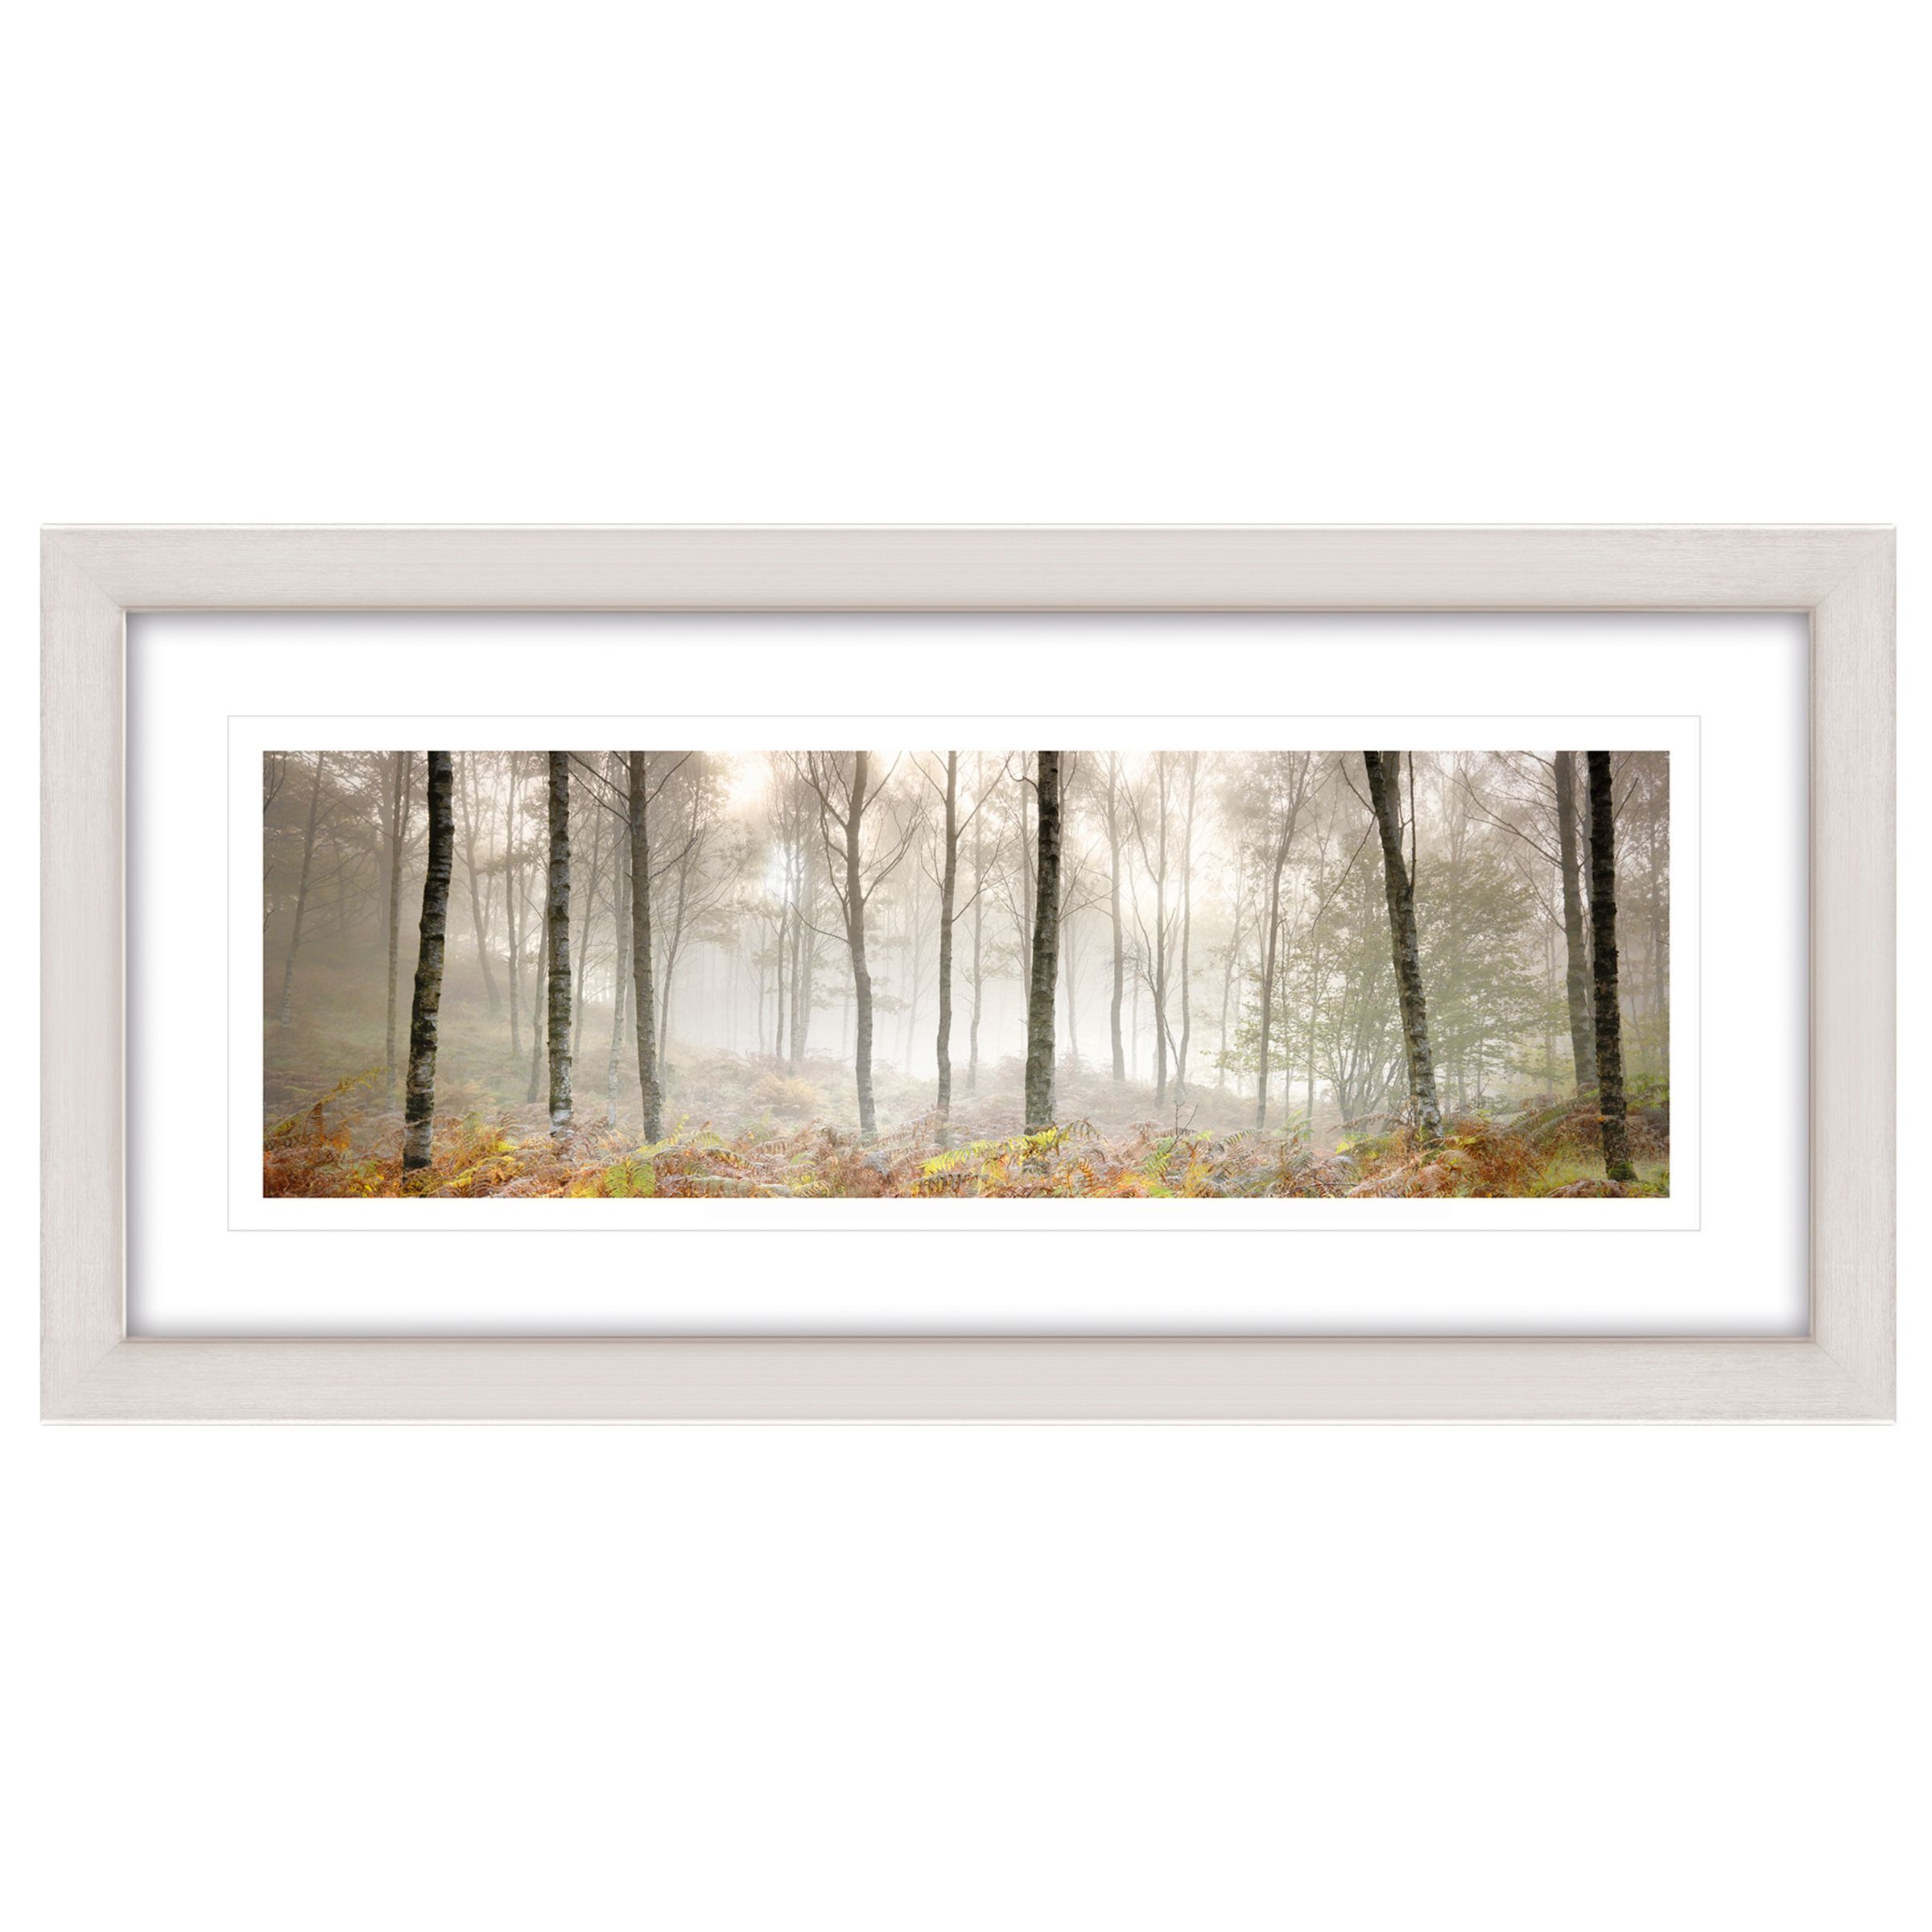 John Lewis Mike Shepherd 'Morning Woodland' Framed Print, 52 x 107cm